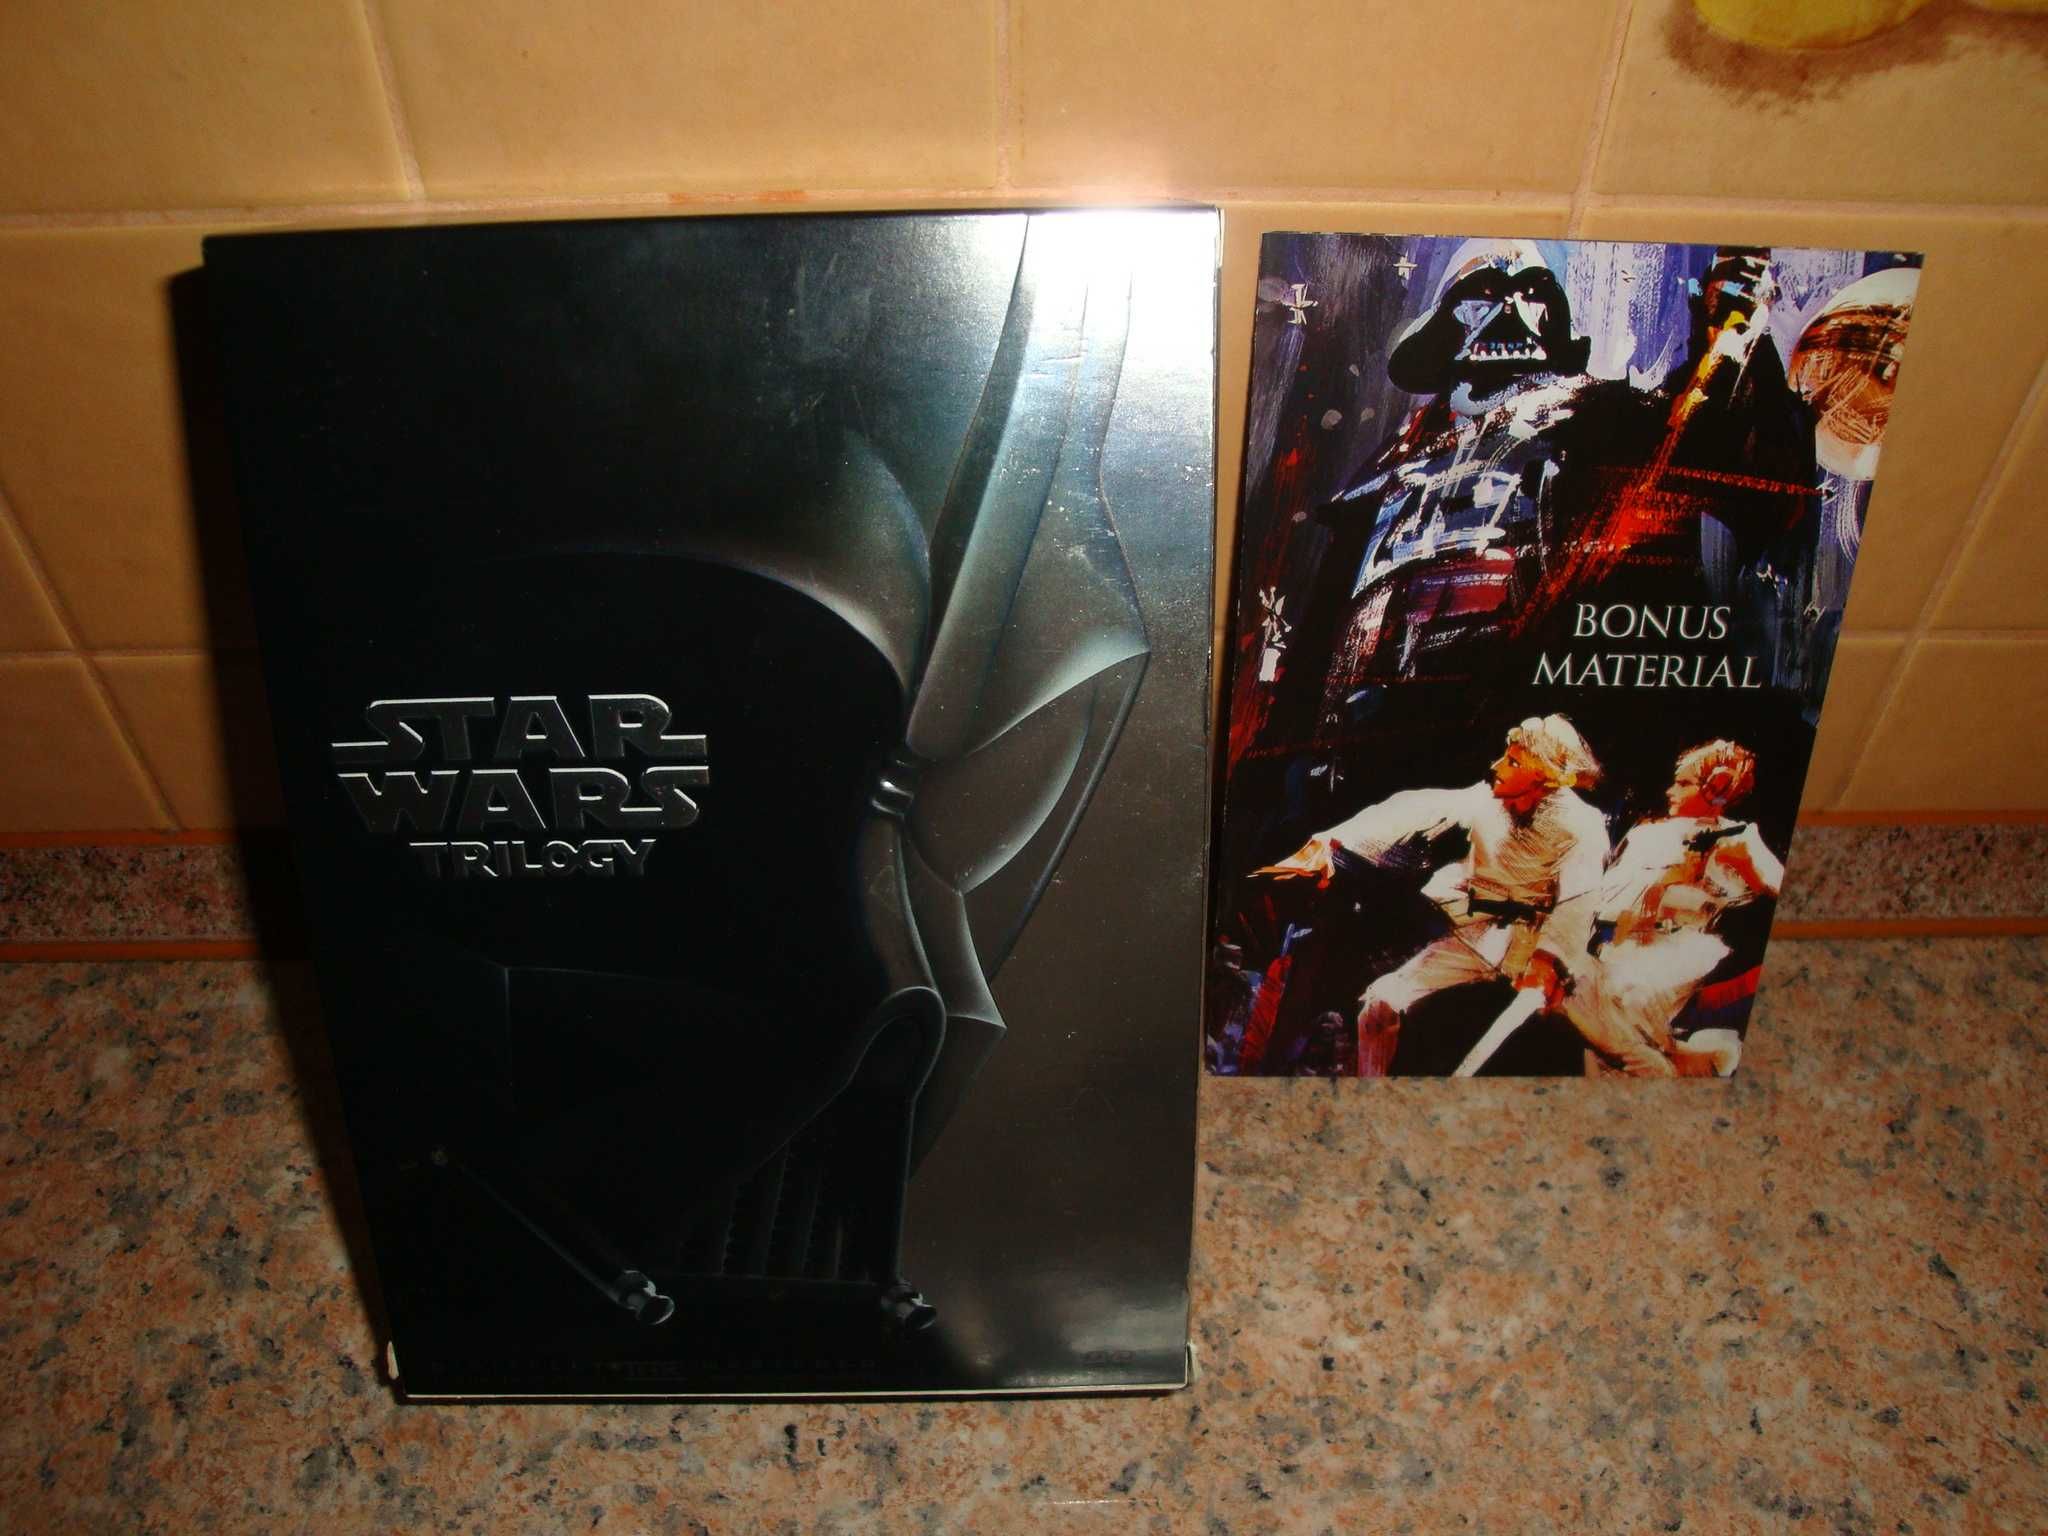 Star Wars Trylogia Box 4 DVD Wydanie Kolekcjonerskie